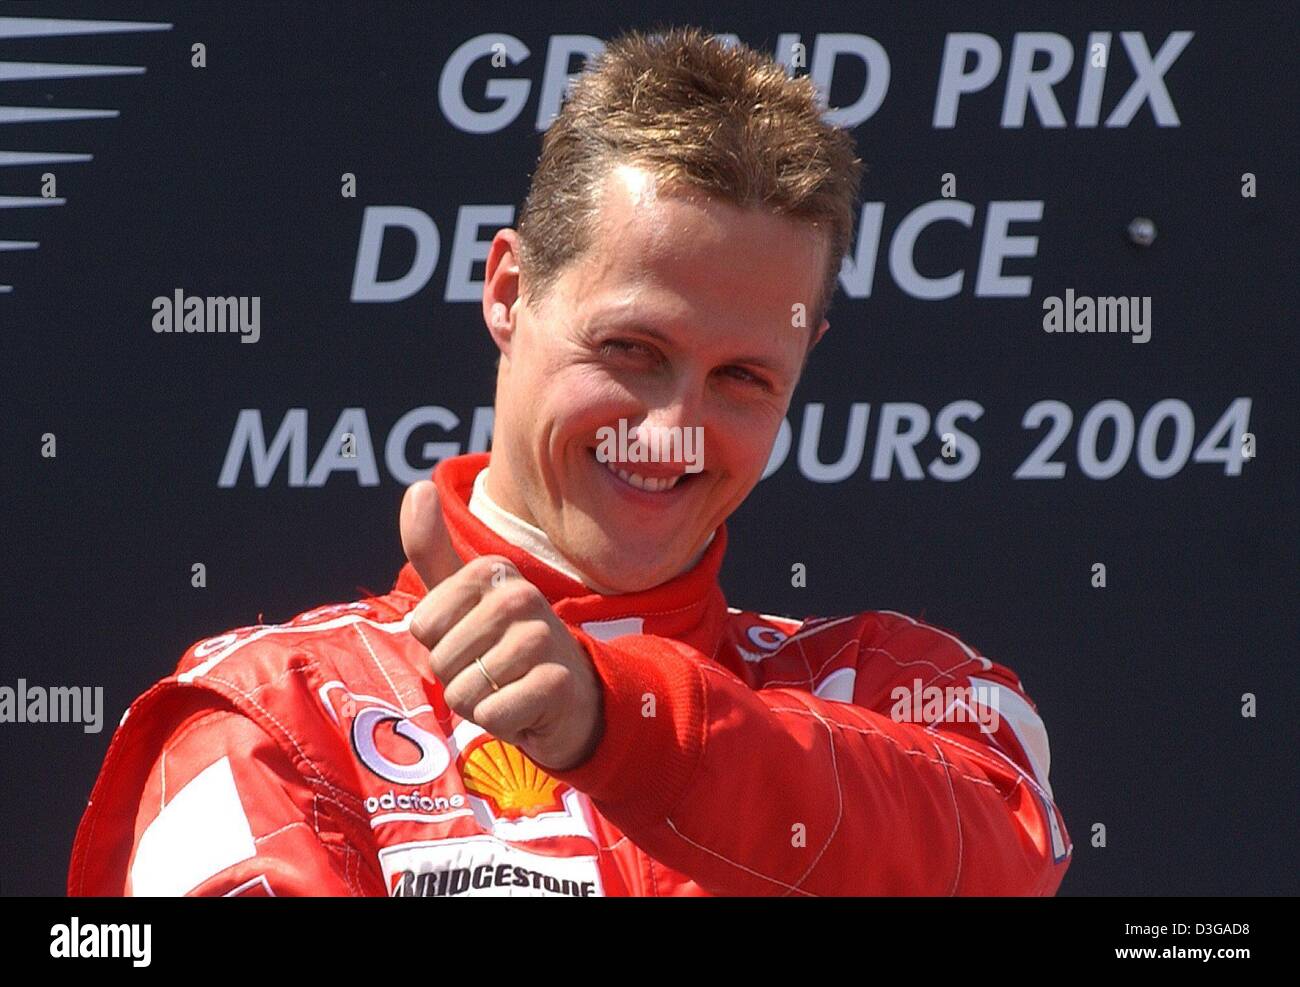 (Dpa) - Pollice su: tedesco pilota di Formula Uno Michael Schumacher (Ferrari) cheers dopo aver vinto il Gran Premio di Francia in Magny Cours racing corso in Francia, il 4 luglio 2004. Il sei volte campione del mondo Schumacher ha vinto la sua nona gara della stagione, matching il suo record di sette vittorie in una sola gara. Ora egli è anche proprietaria della prima vittoria in F1 con quattro deliberata di pit-stop. Foto Stock